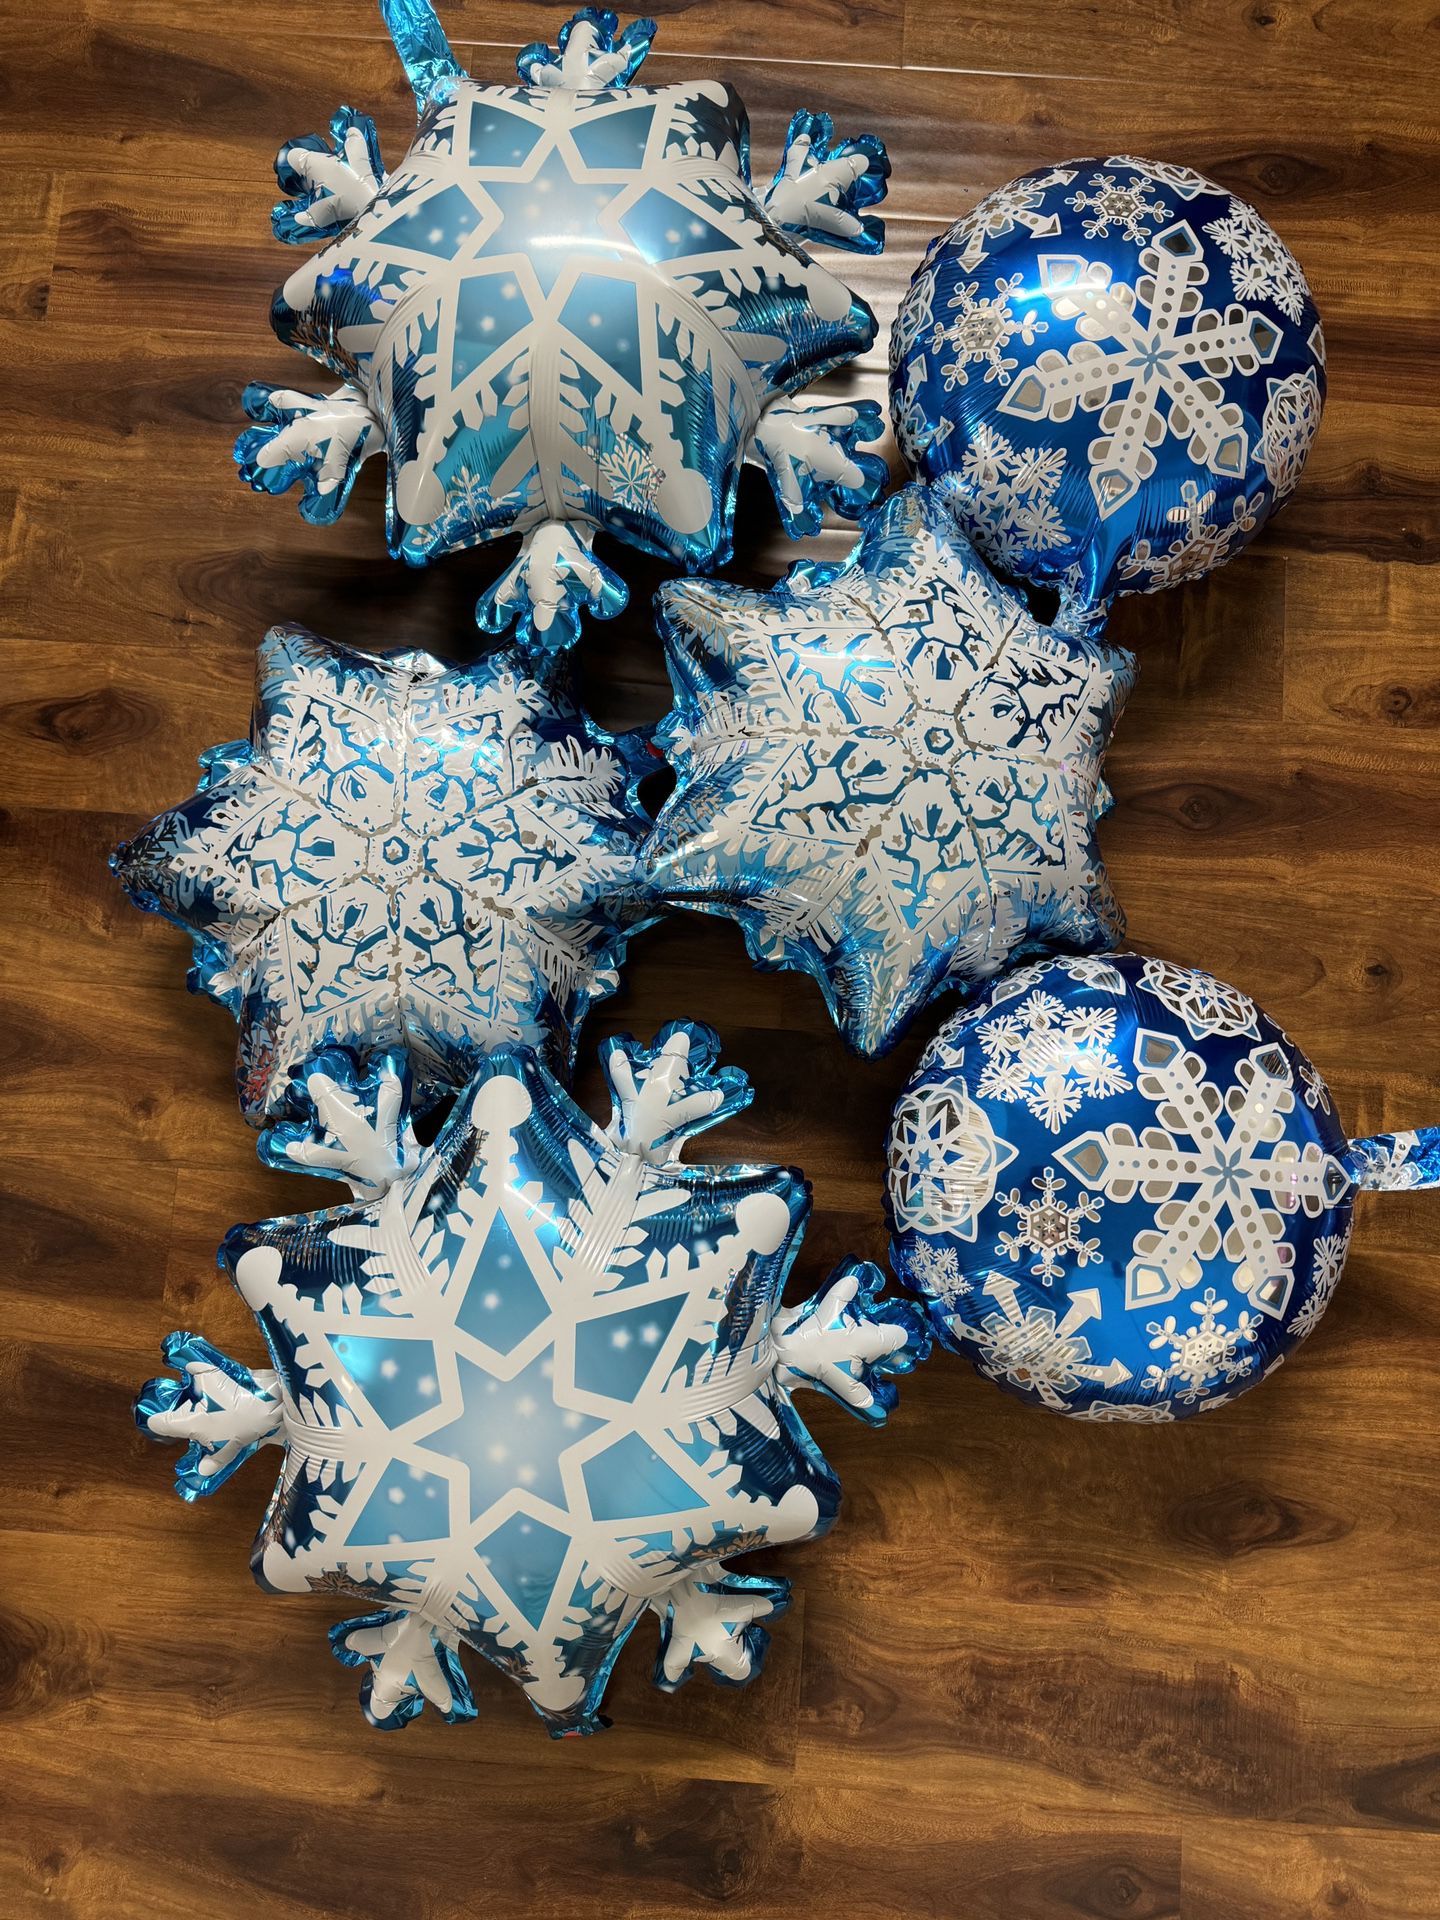 Snowflakes Frozen Theme Foil Balloons 